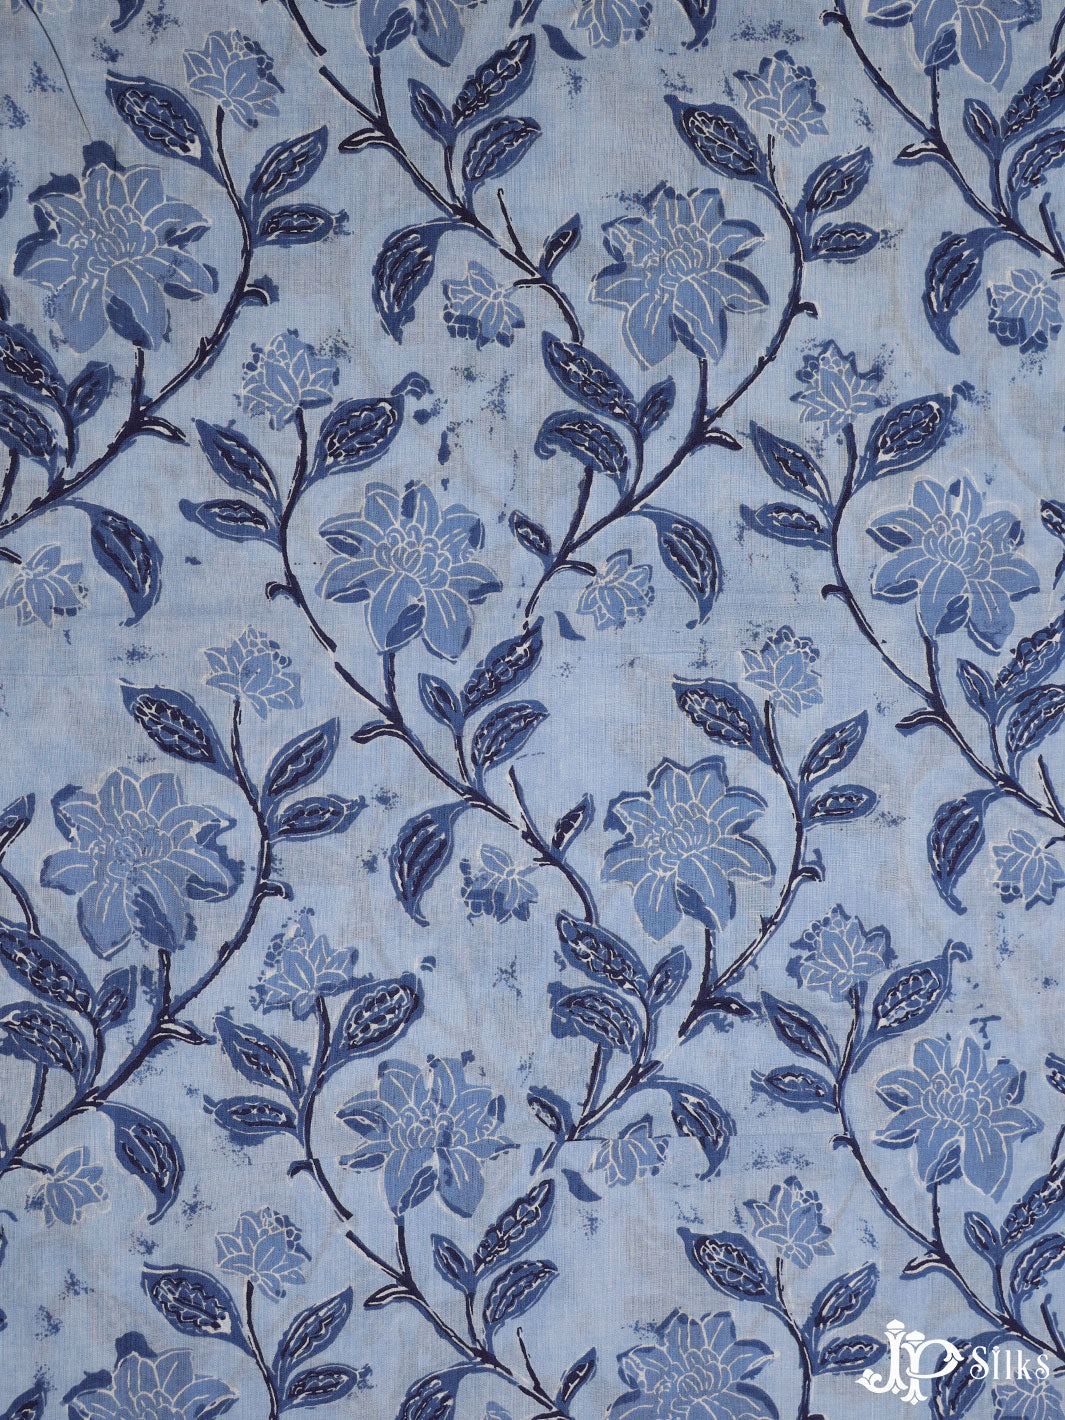 Sky Blue Floral Design Cotton Fabric - D1778 - View 1